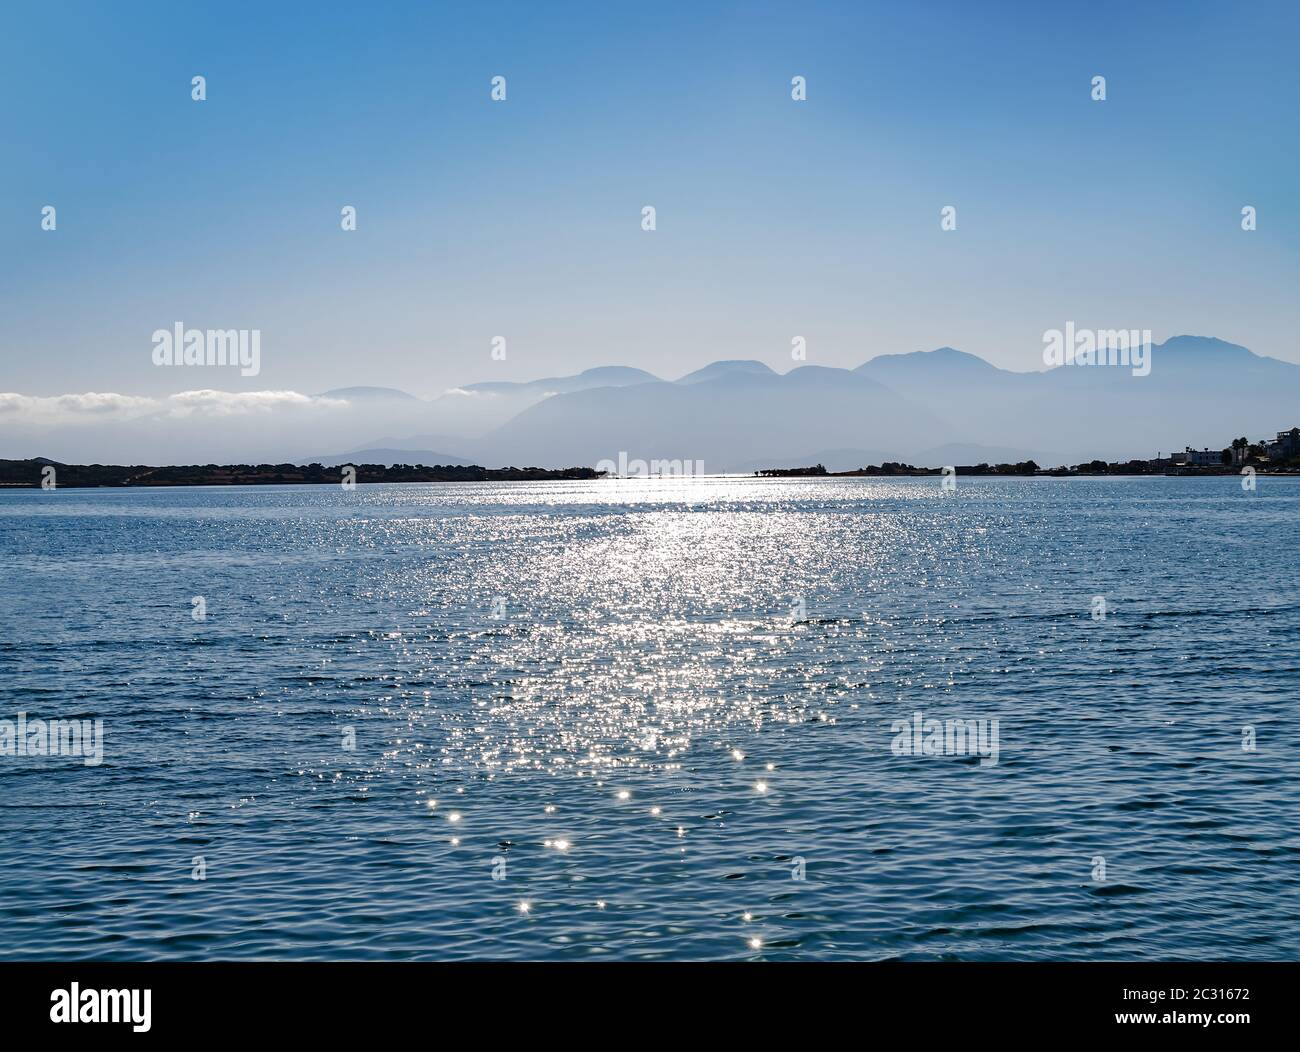 Oberfläche von Wasser, Sonne auf der Oberfläche des Meeres, schönen Sommer Landschaft an einem warmen Tag Stockfoto